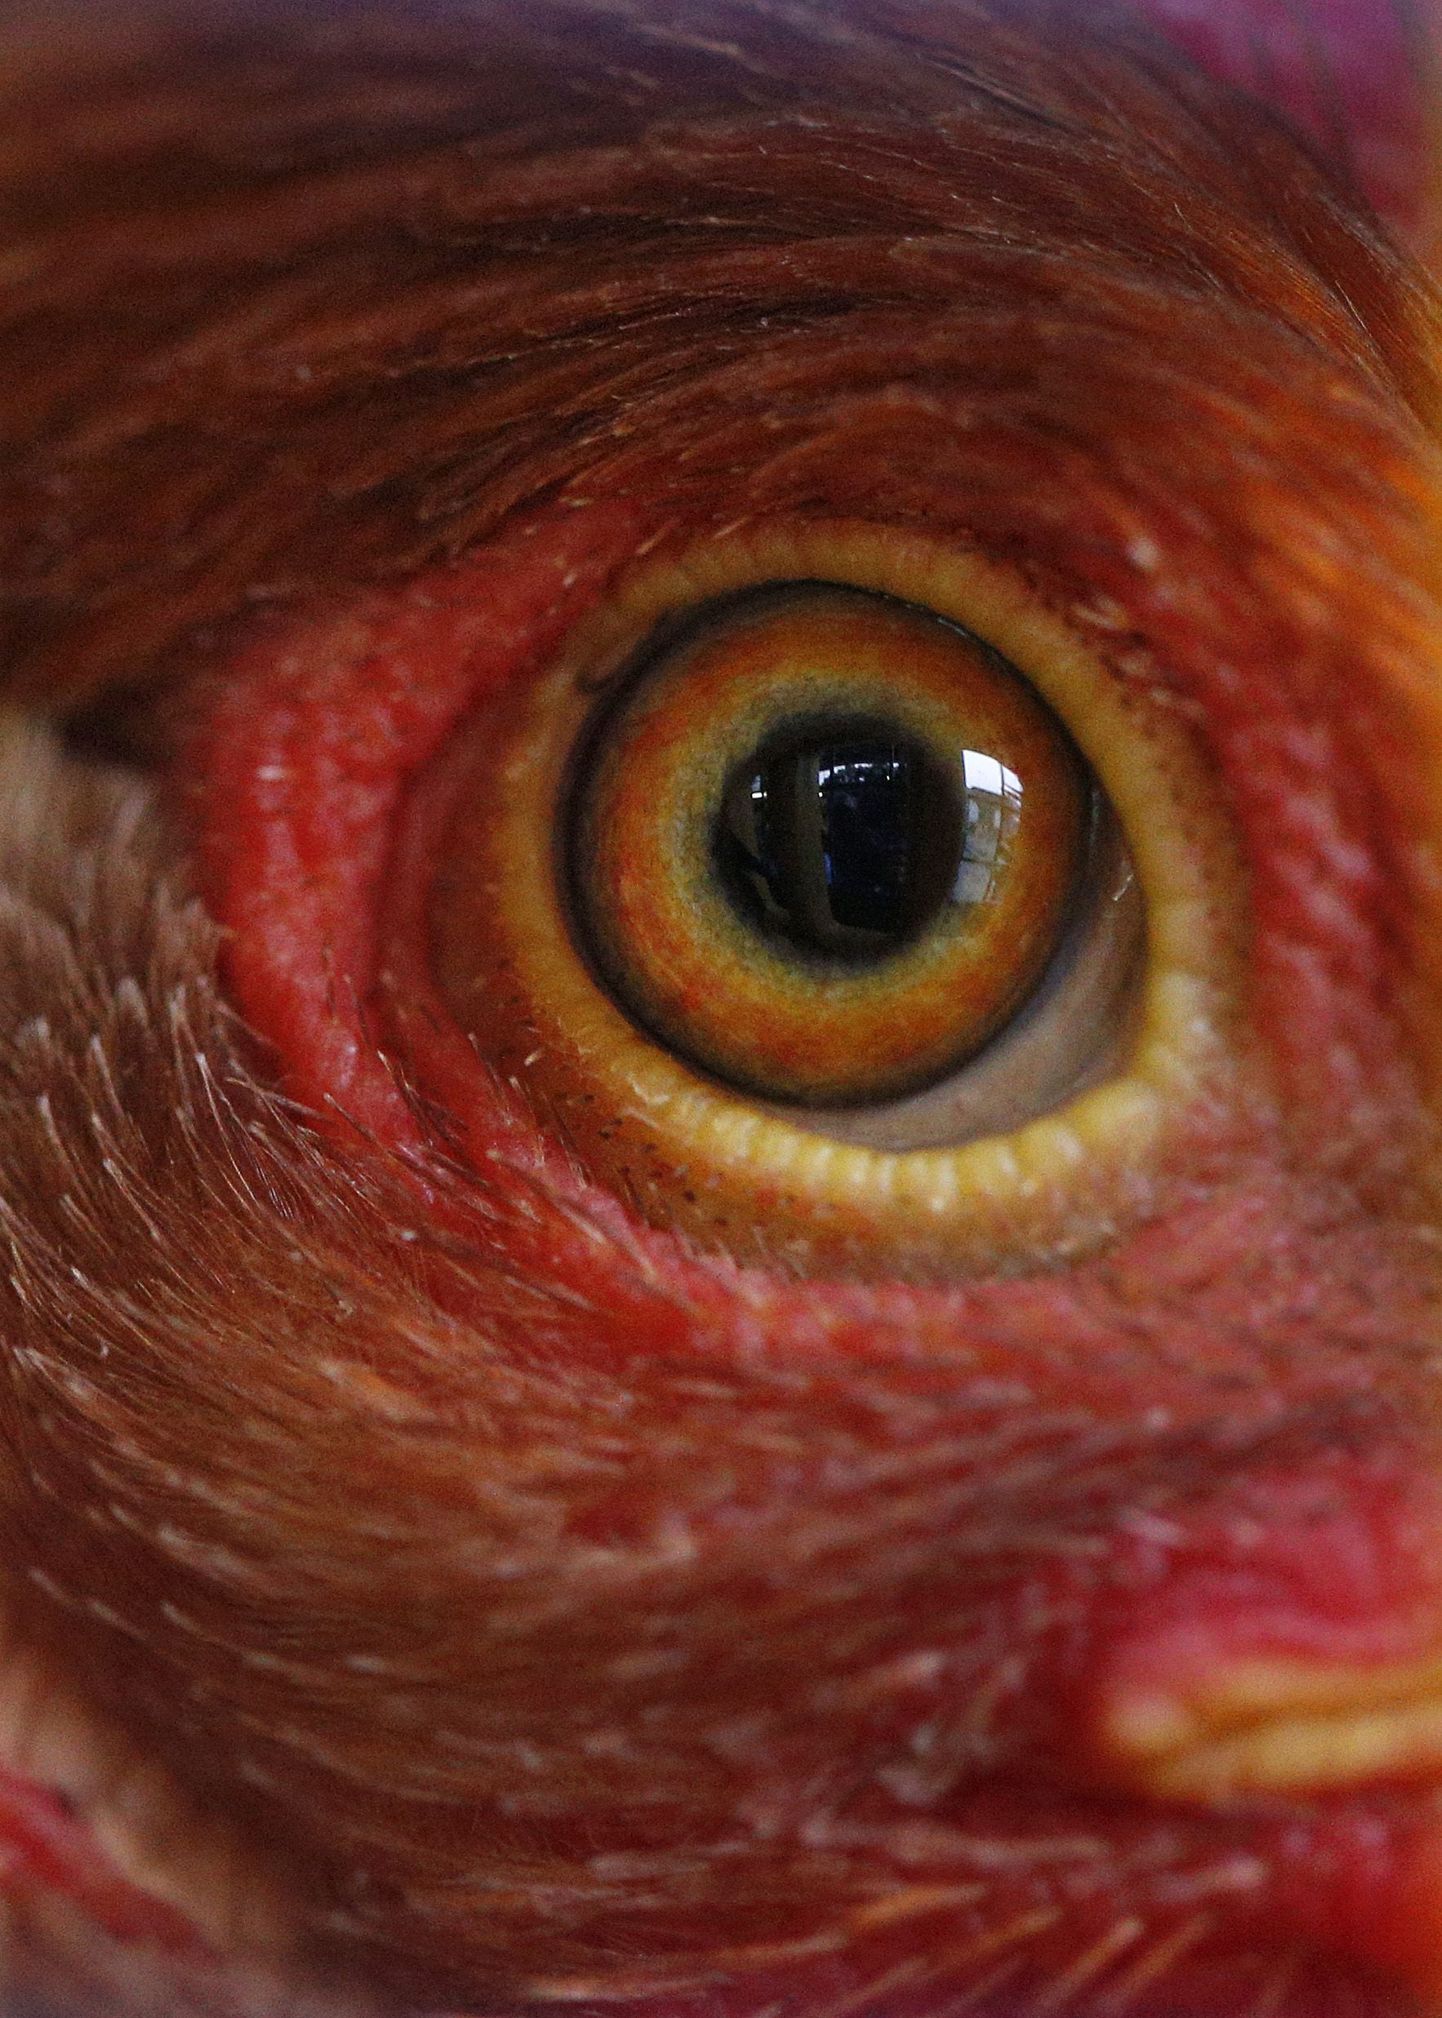 Fotograafi sõnul kanad nagu tunneksid, et nad võidakse hävitada ning nende silmis peegeldus hirm